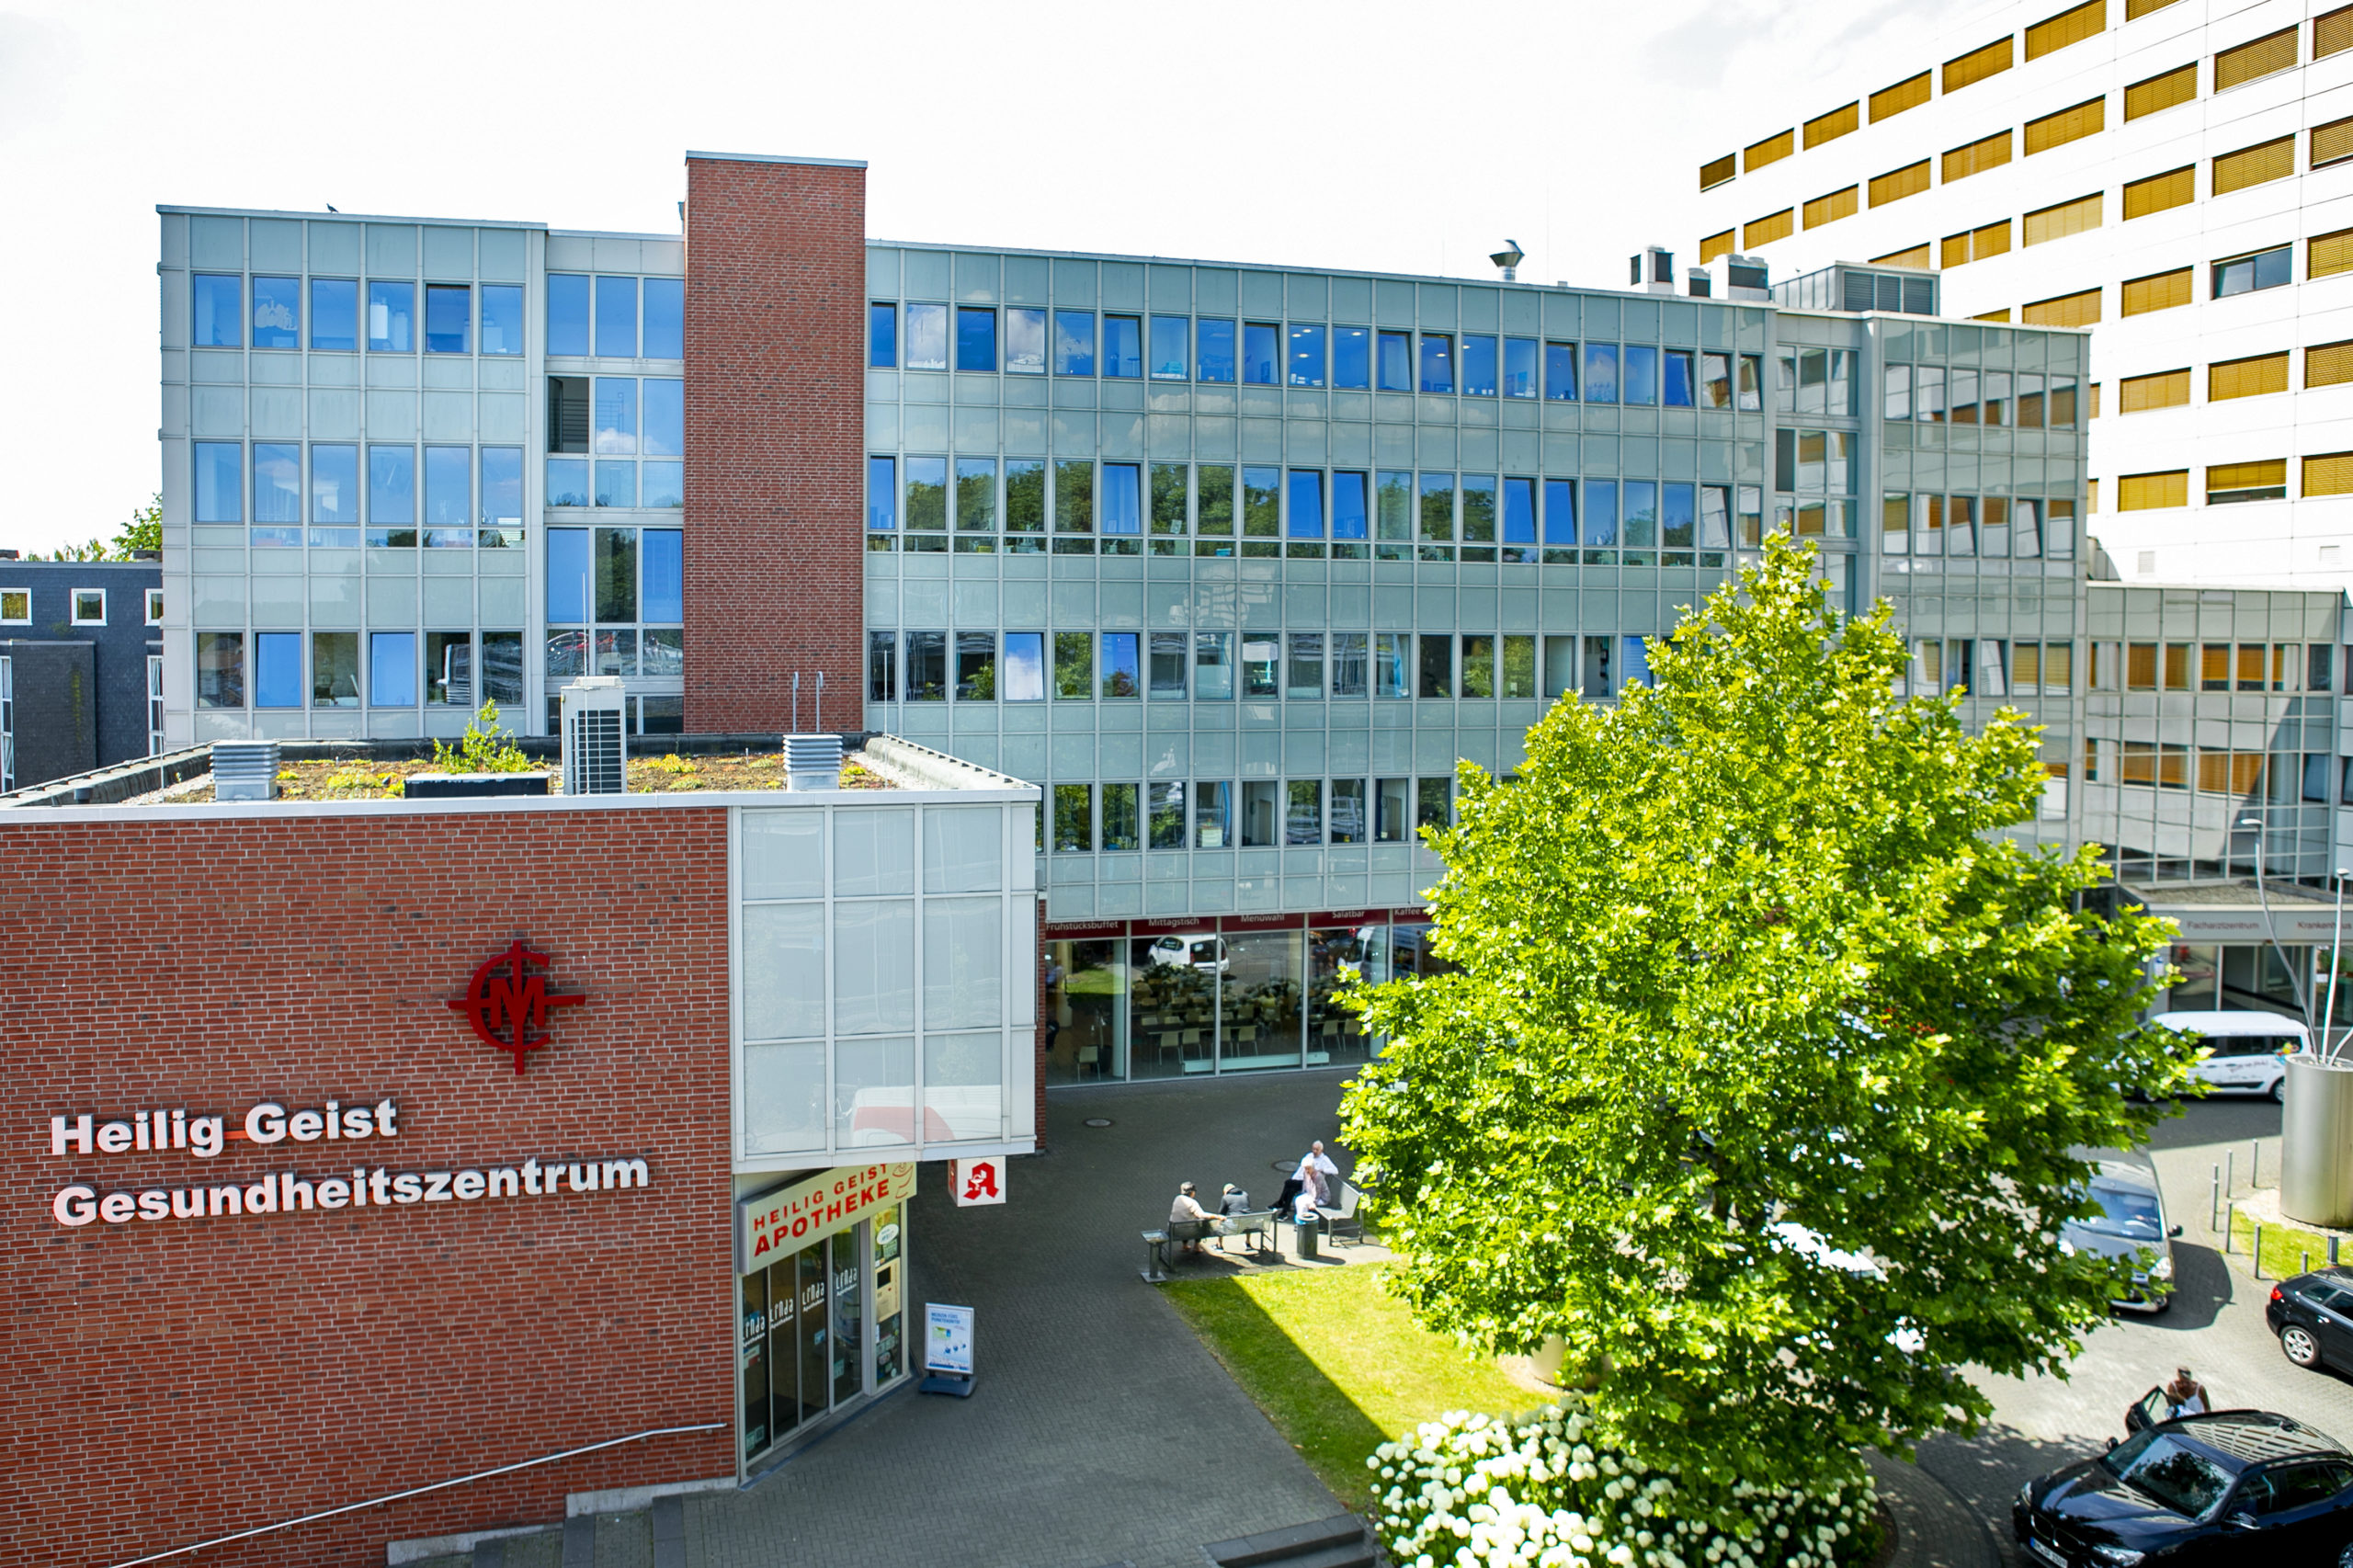 Cellitinnen-Krankenhaus Heilig Geist 2019/2020